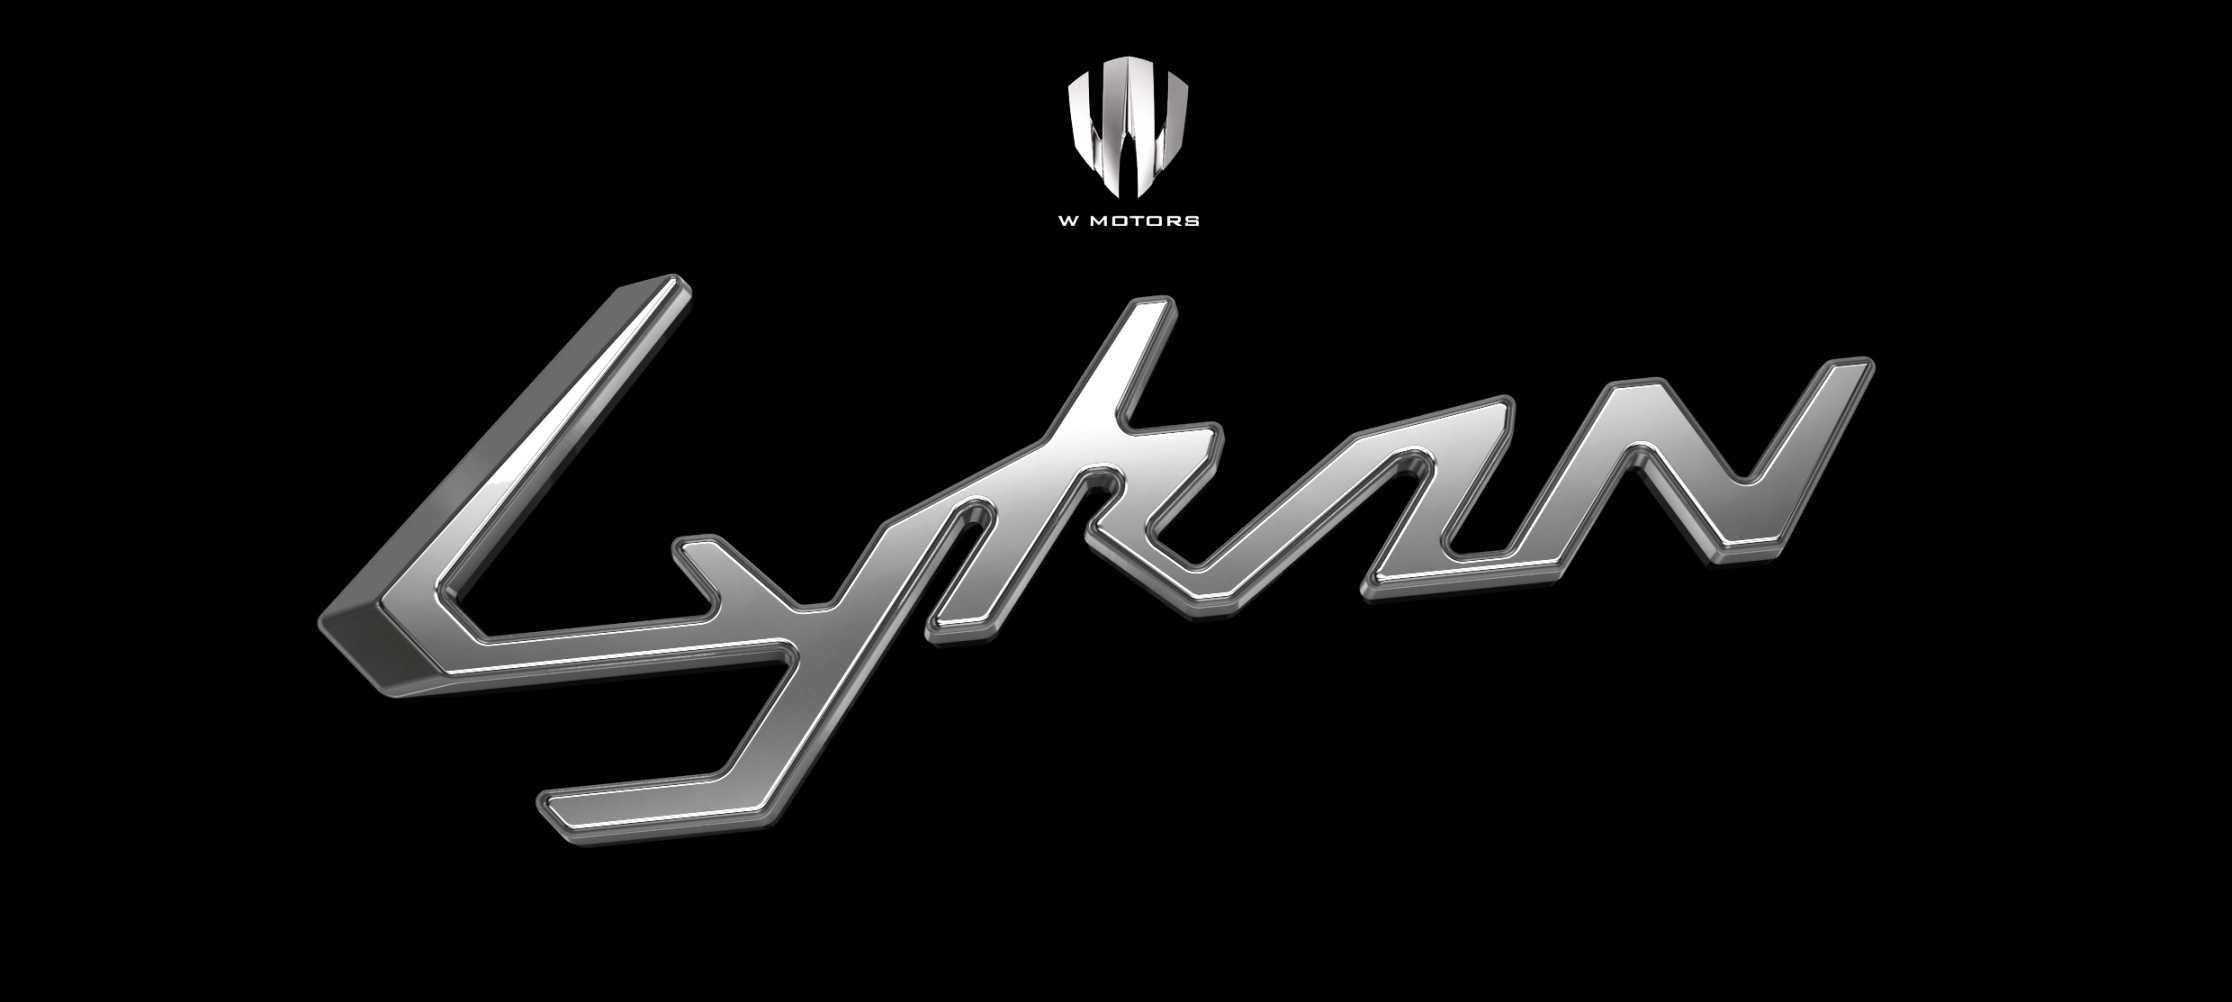 2014 W Motors Lykan Hypersport , HD Wallpaper & Backgrounds